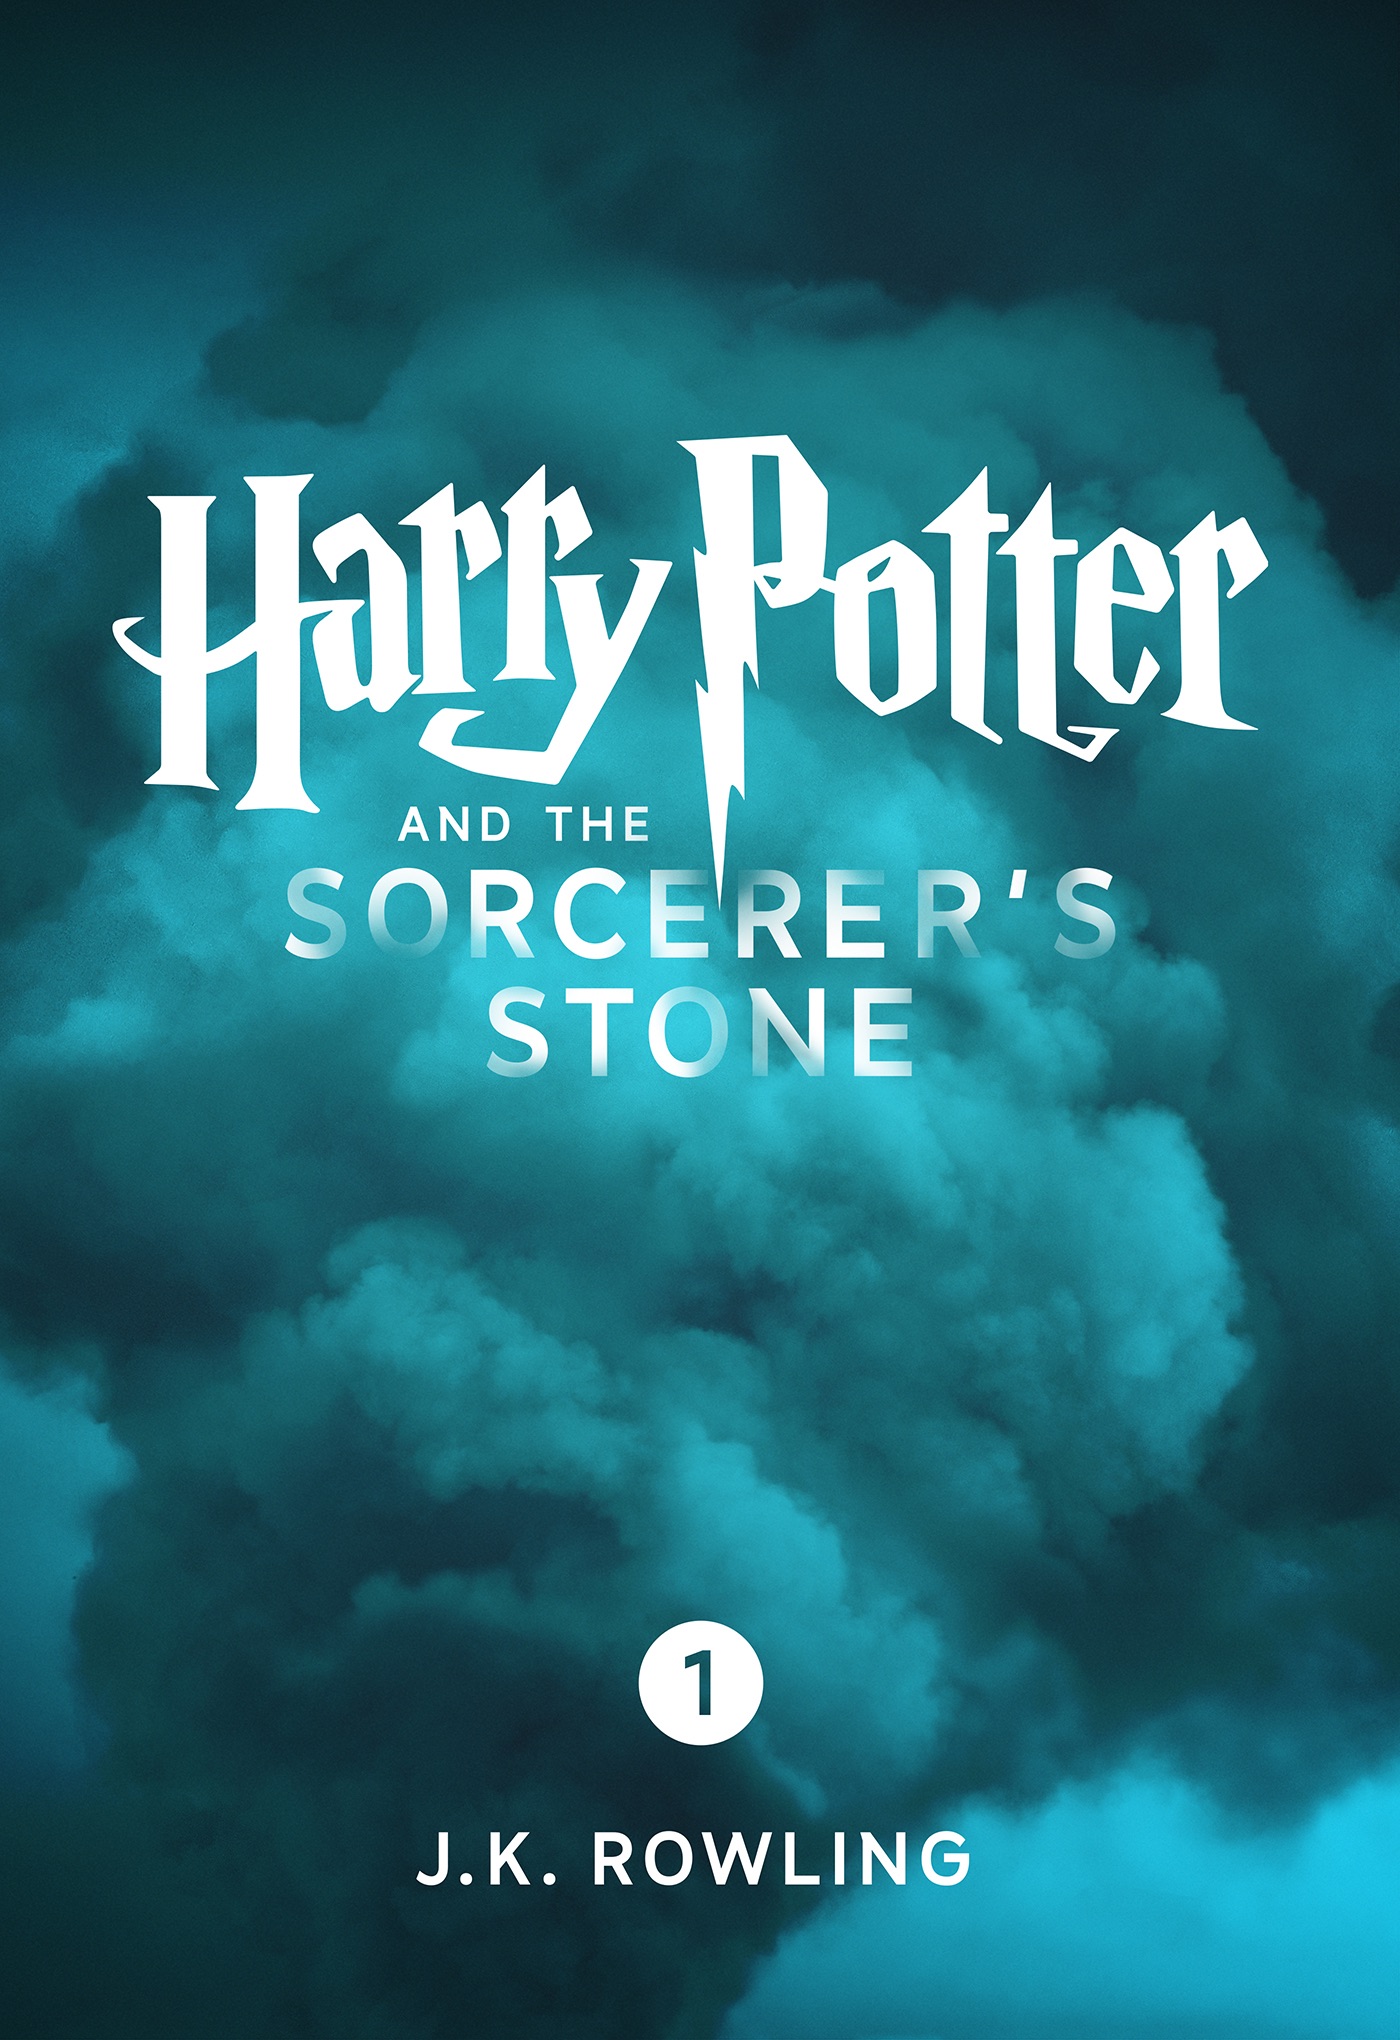 harry potter books sorcerer